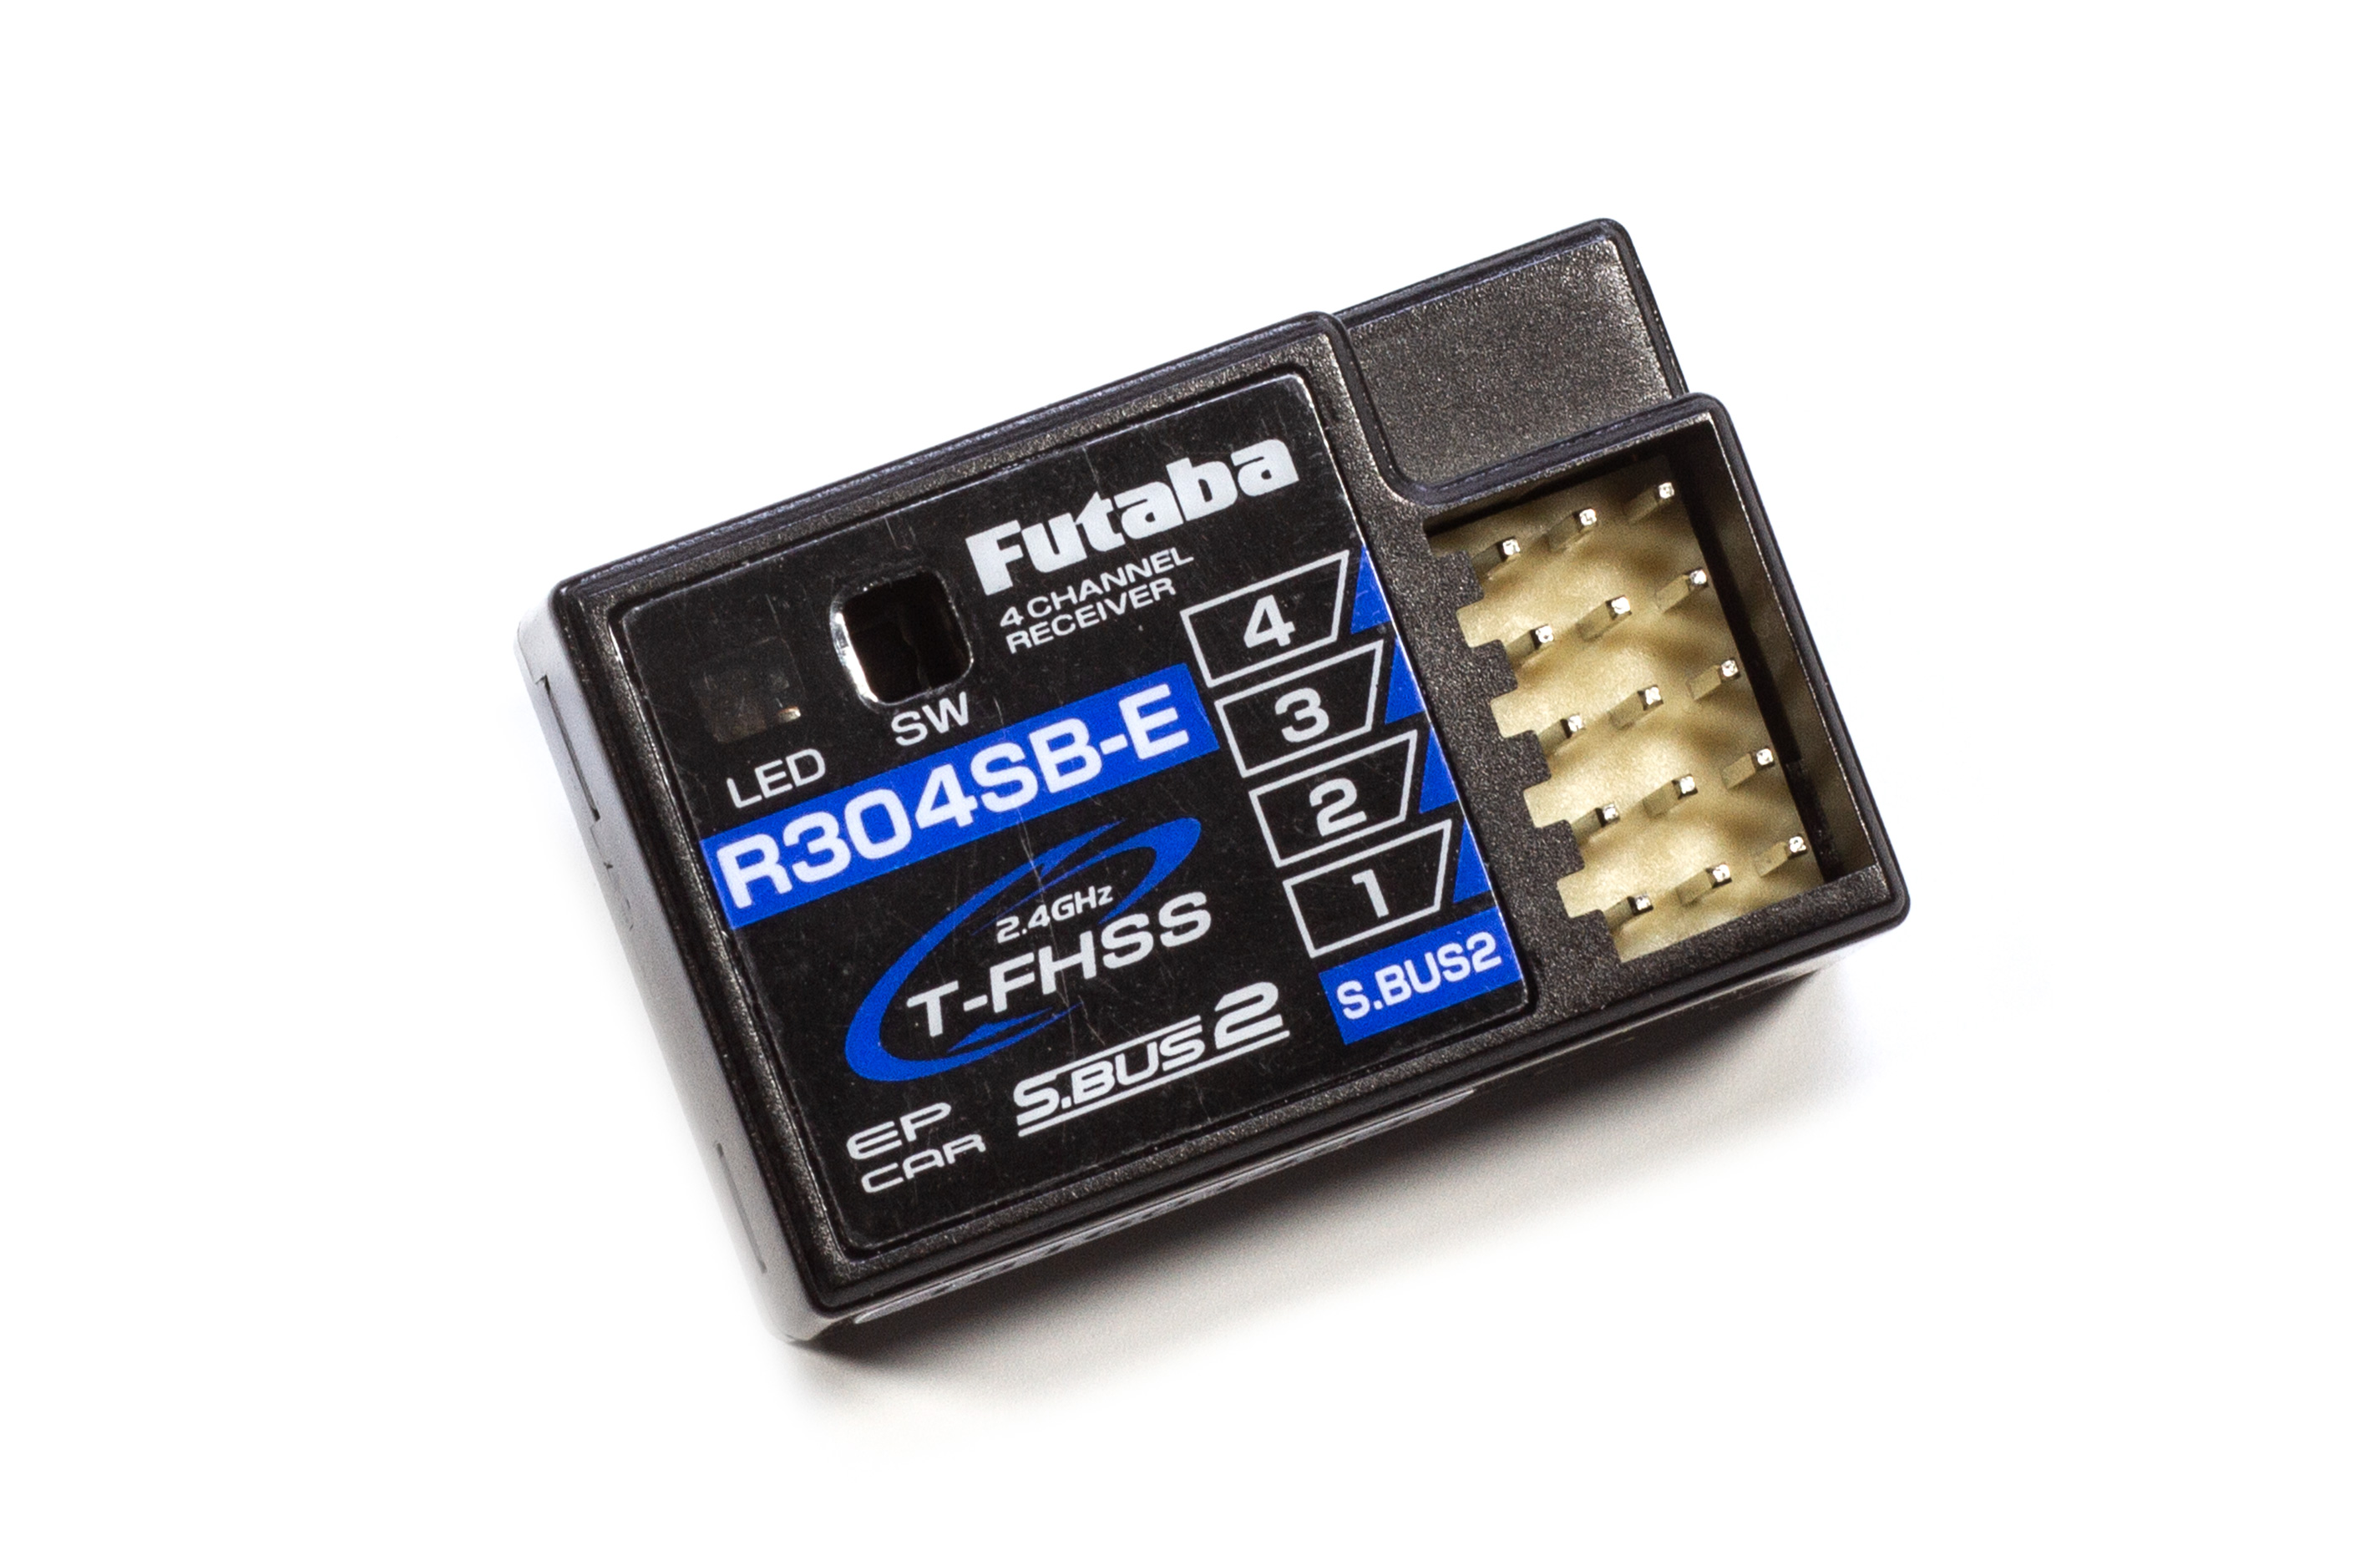 FUTABA R304SB-E 2,4 GHz T-FHSS Receiver